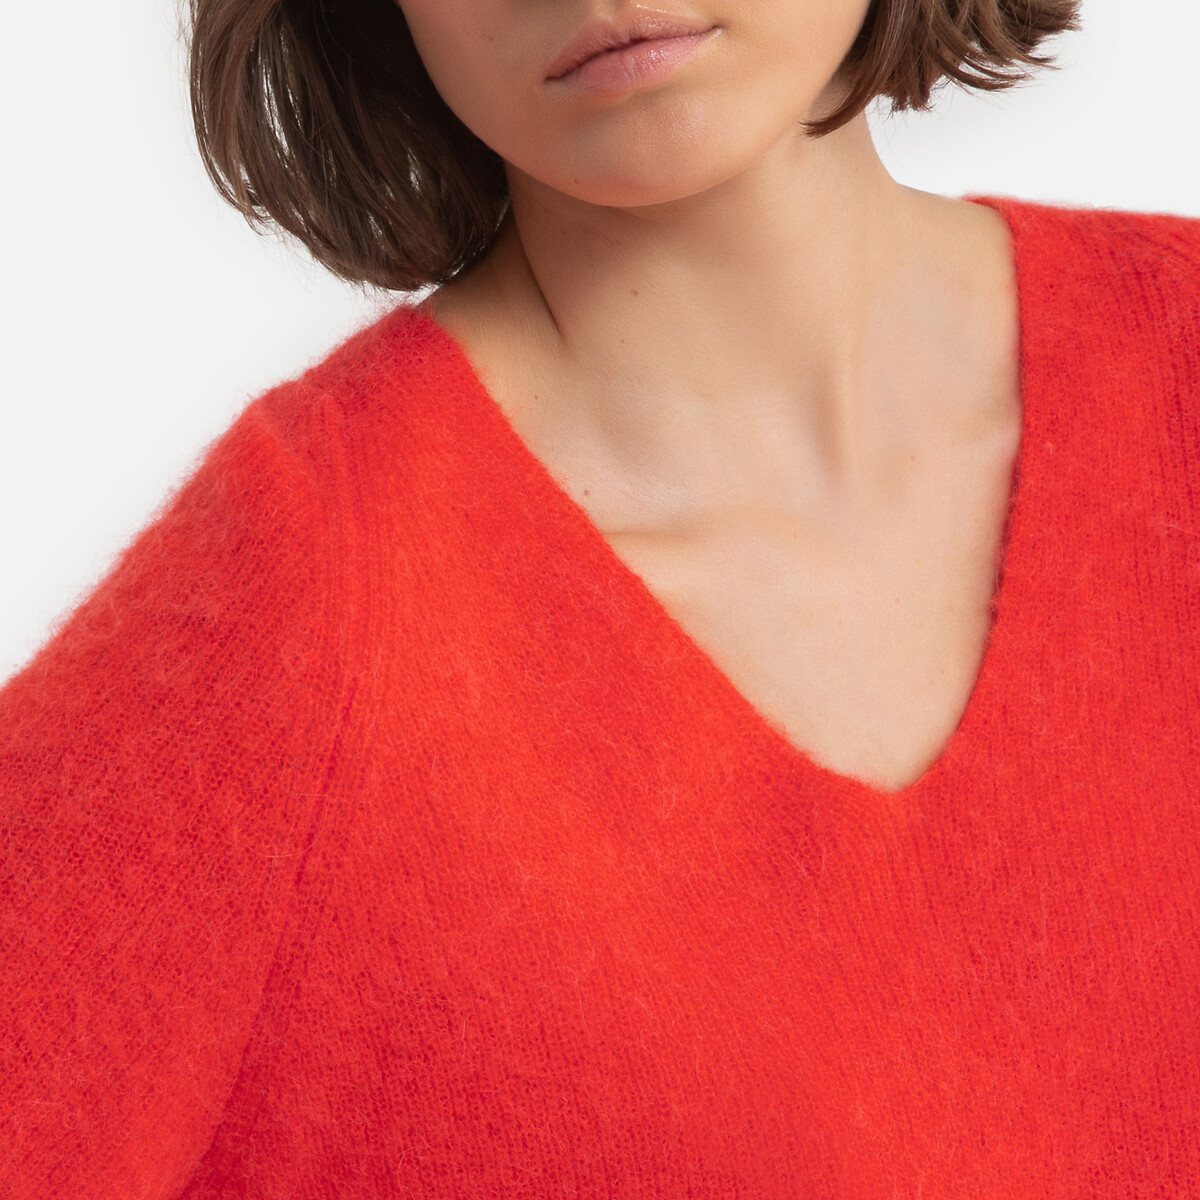 Пуловер LaRedoute С v-образным вырезом из плотного трикотажа ALTEA 0(XS) красный, размер 0(XS) С v-образным вырезом из плотного трикотажа ALTEA 0(XS) красный - фото 3